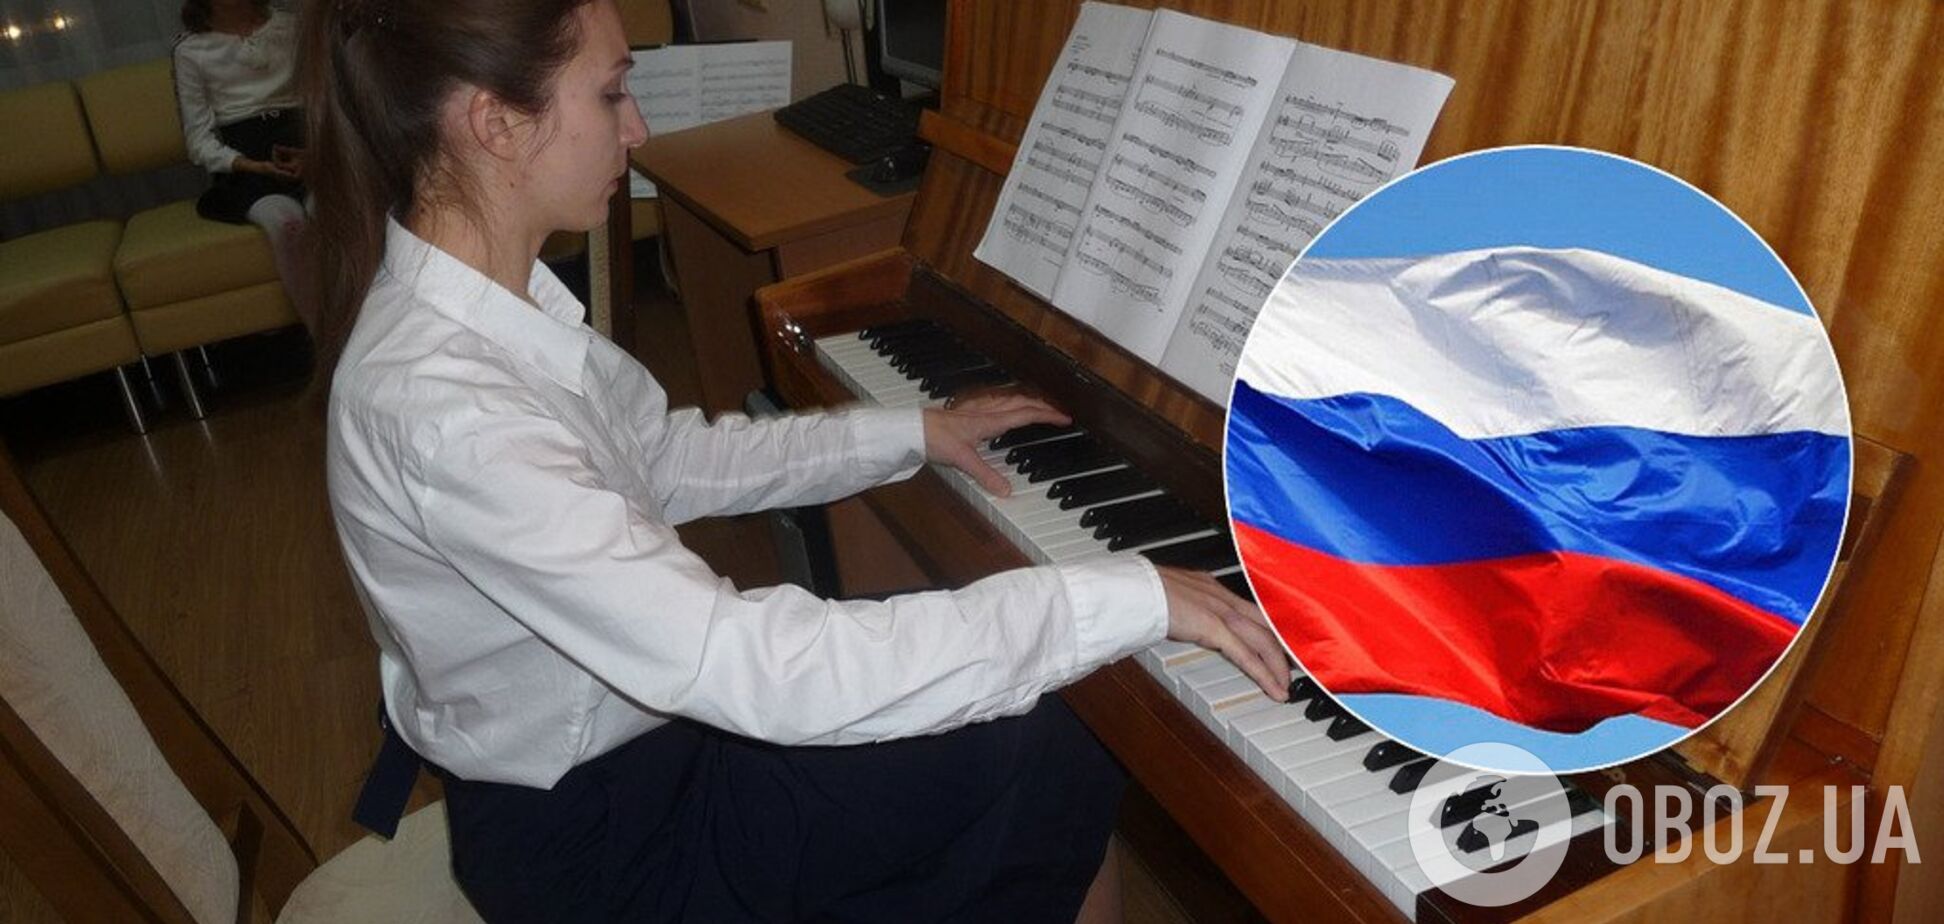 'Все российское!' Сеть возмутил учебник в музыкальной школе Киева